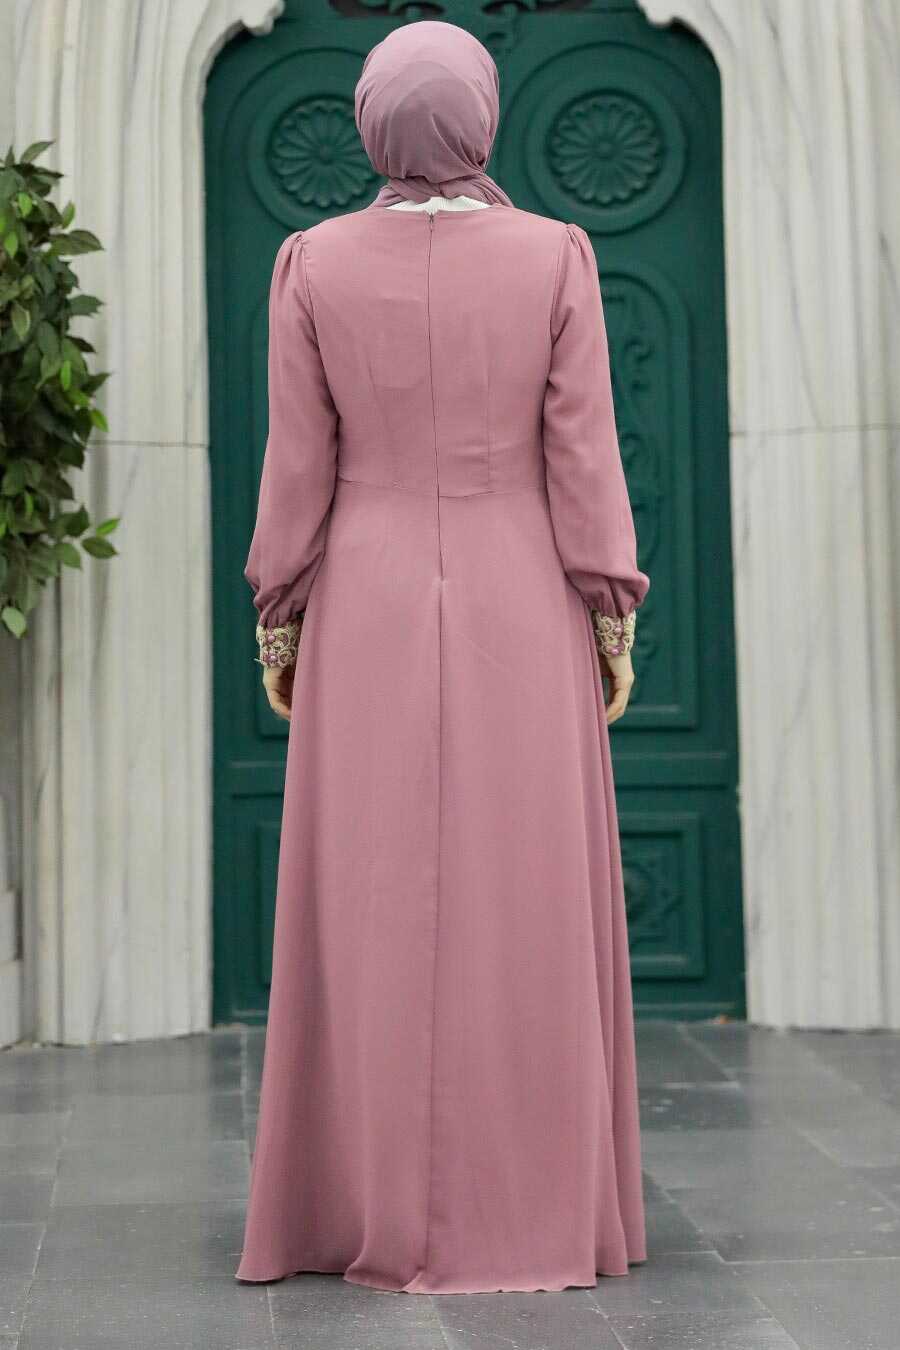 Neva Style - Modern Dusty Rose Modest Dress 25700GK